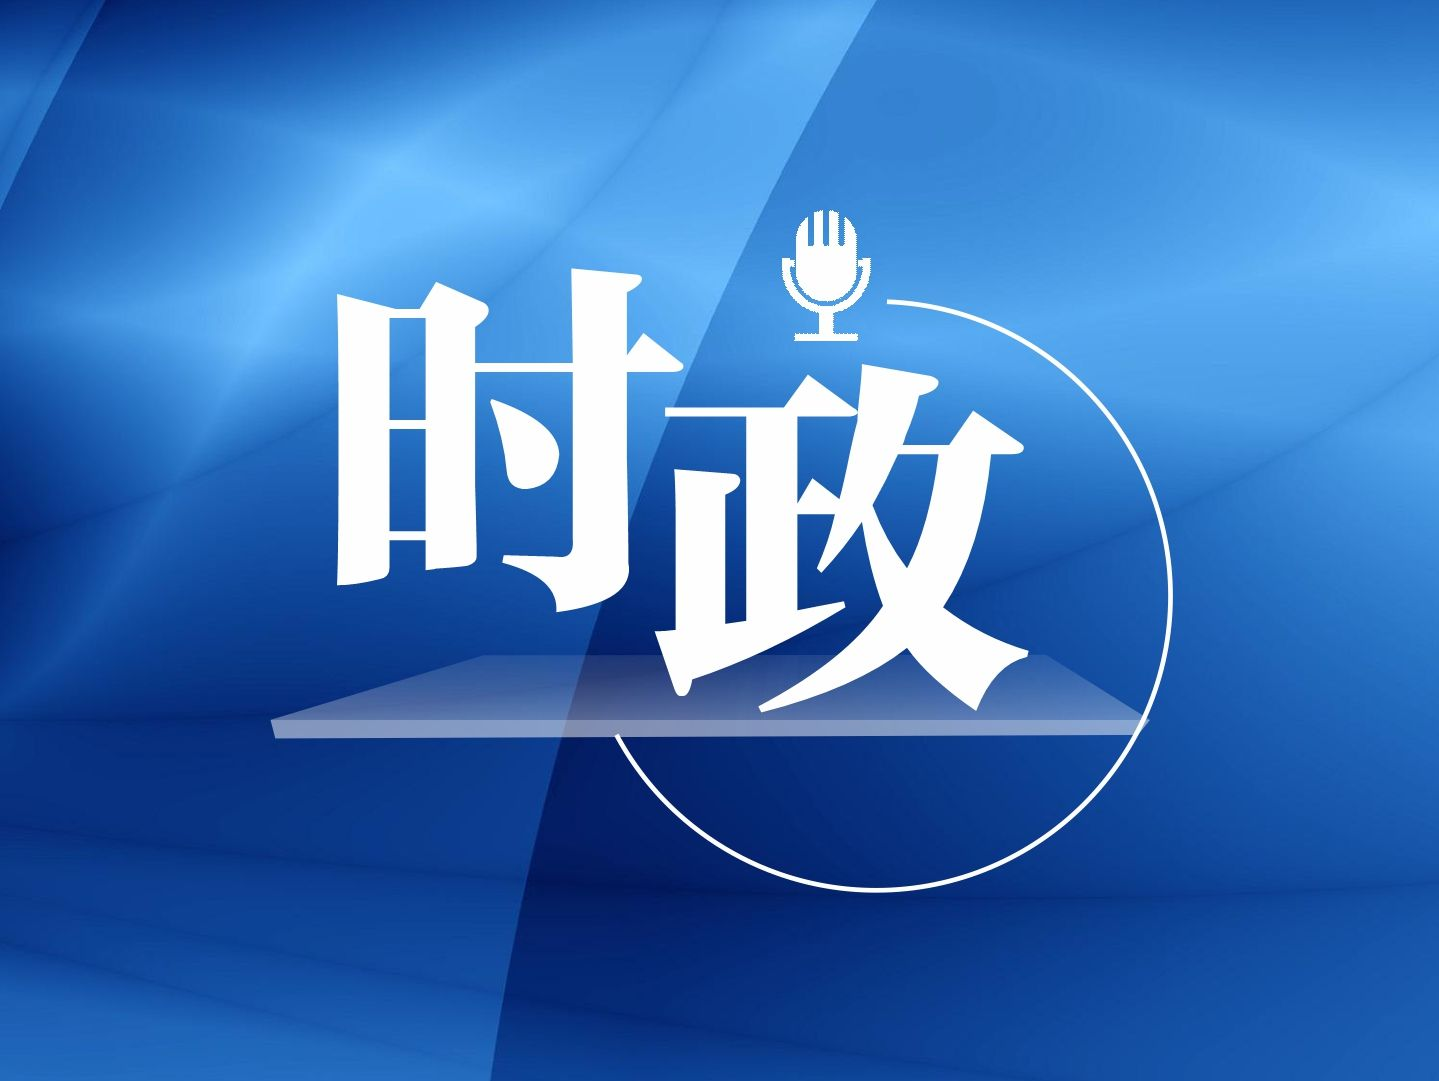 习近平在中共中央政治局第九次集体学习时强调 铸牢中华民族共同体意识 推进新时代党的民族工作高质量发展